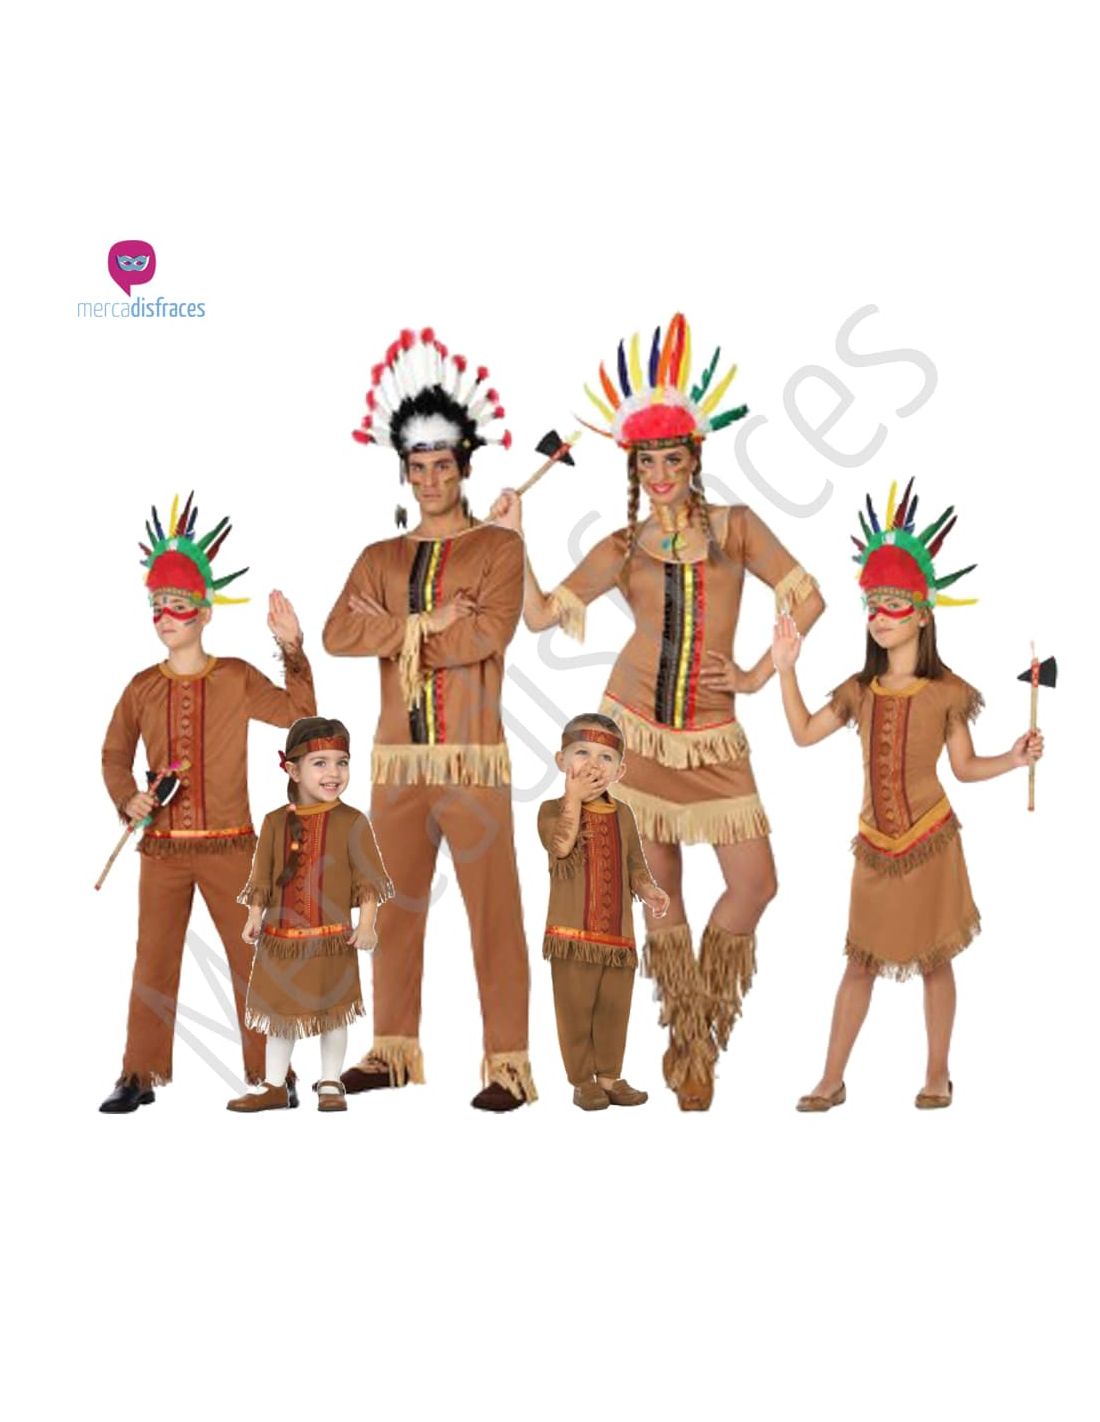 Comprar Disfraz de India Apache Niña - Disfraces de Indios Infantiles